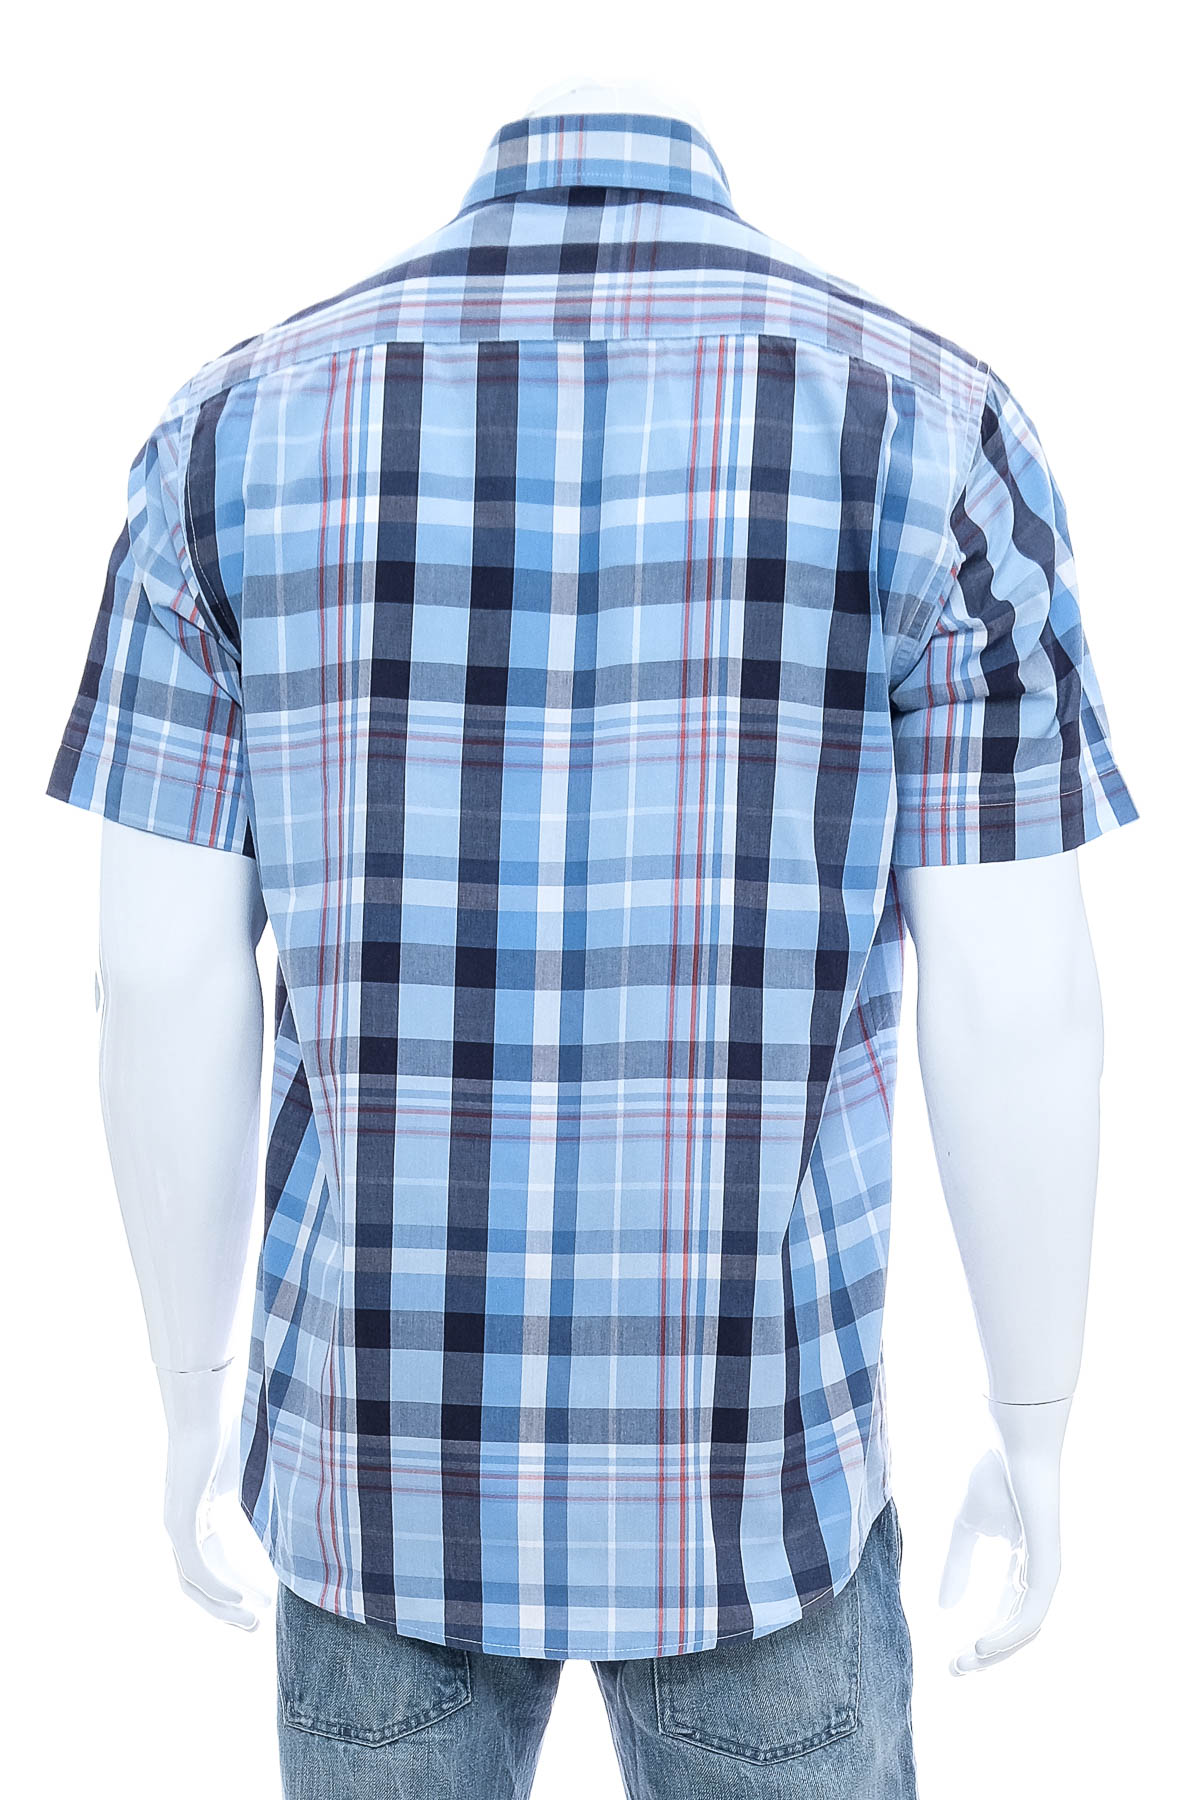 Men's shirt - Henderson - 1